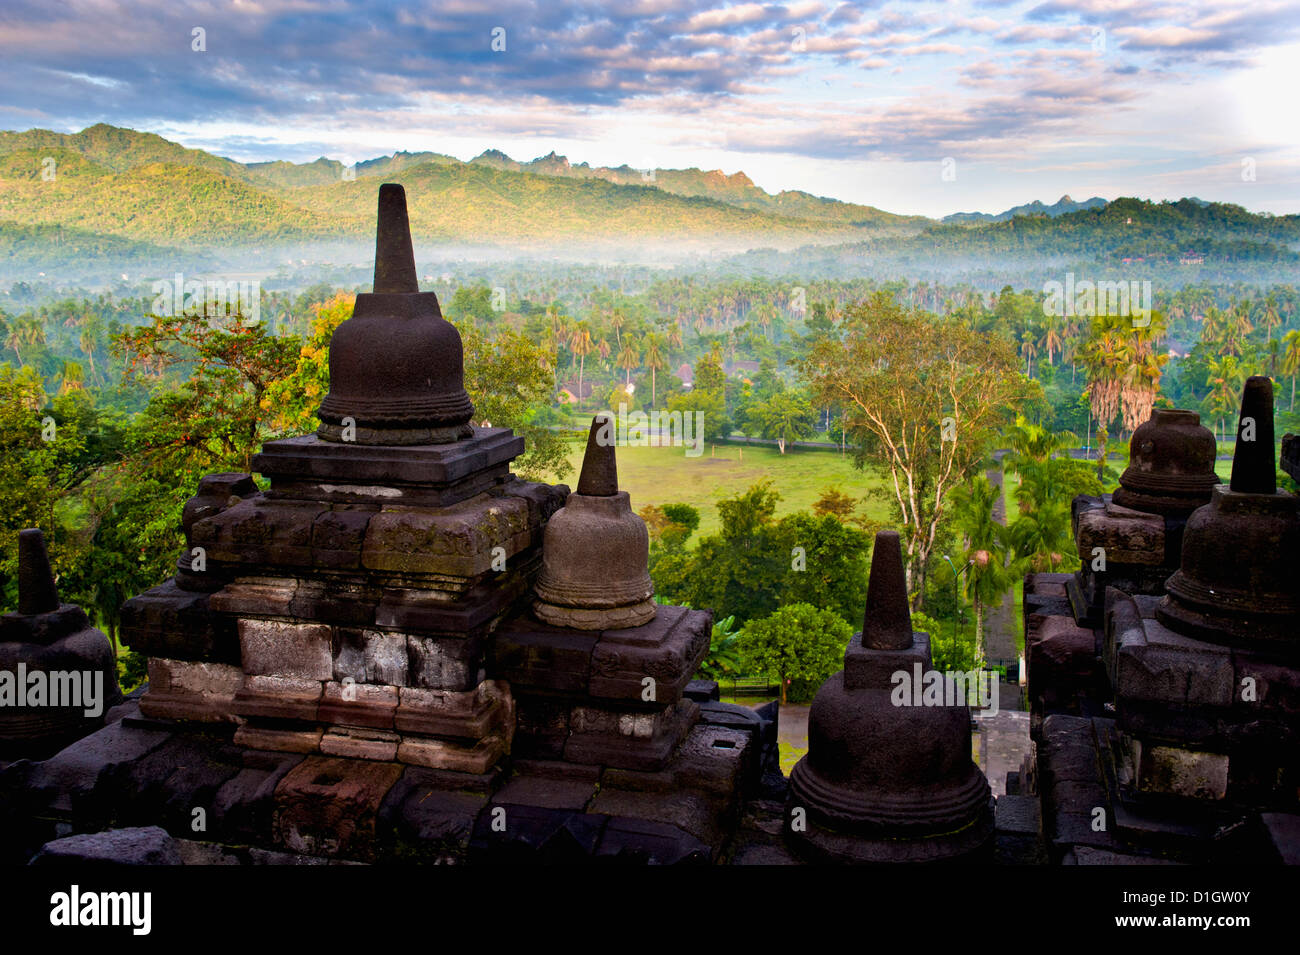 Stupa de pierre de Borobodur au matin au lever du soleil, Borobudur (Borobodur), Yogyakarta, Java, Indonésie, Asie du Sud, Asie Banque D'Images